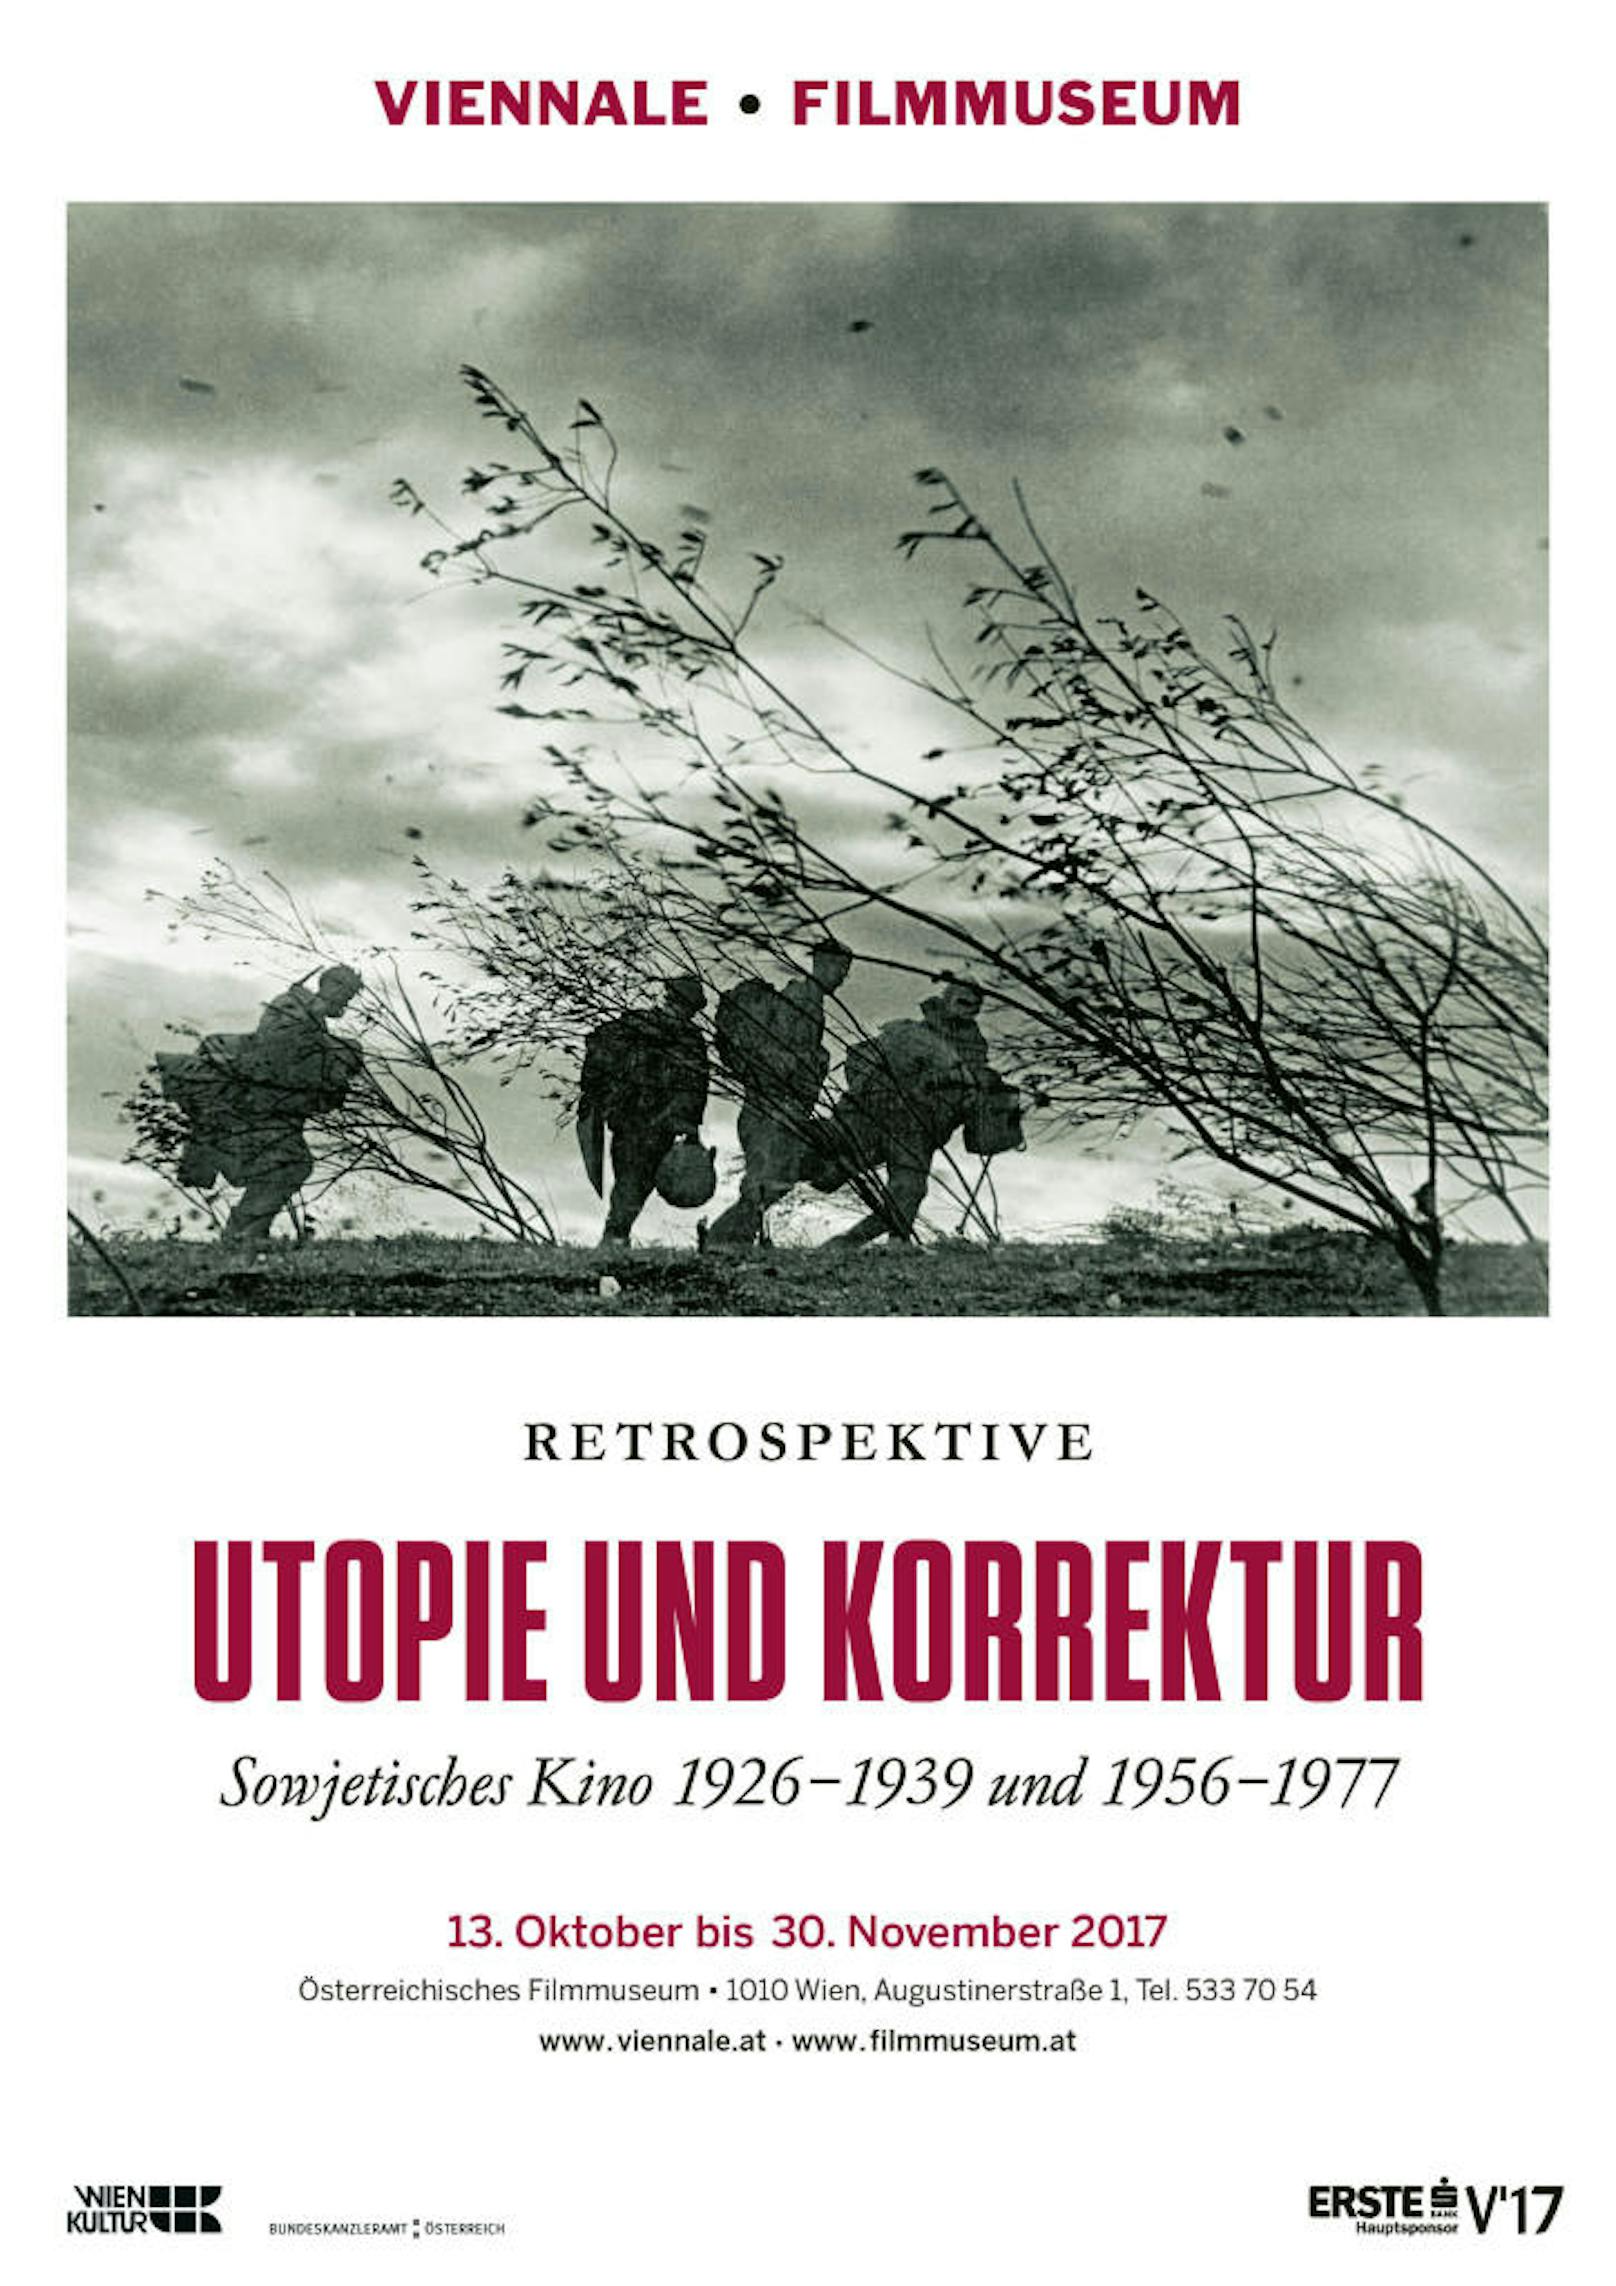 Das Plakat der Retrospektive 2017 unter dem Motto: "Utopie und Korrektur"